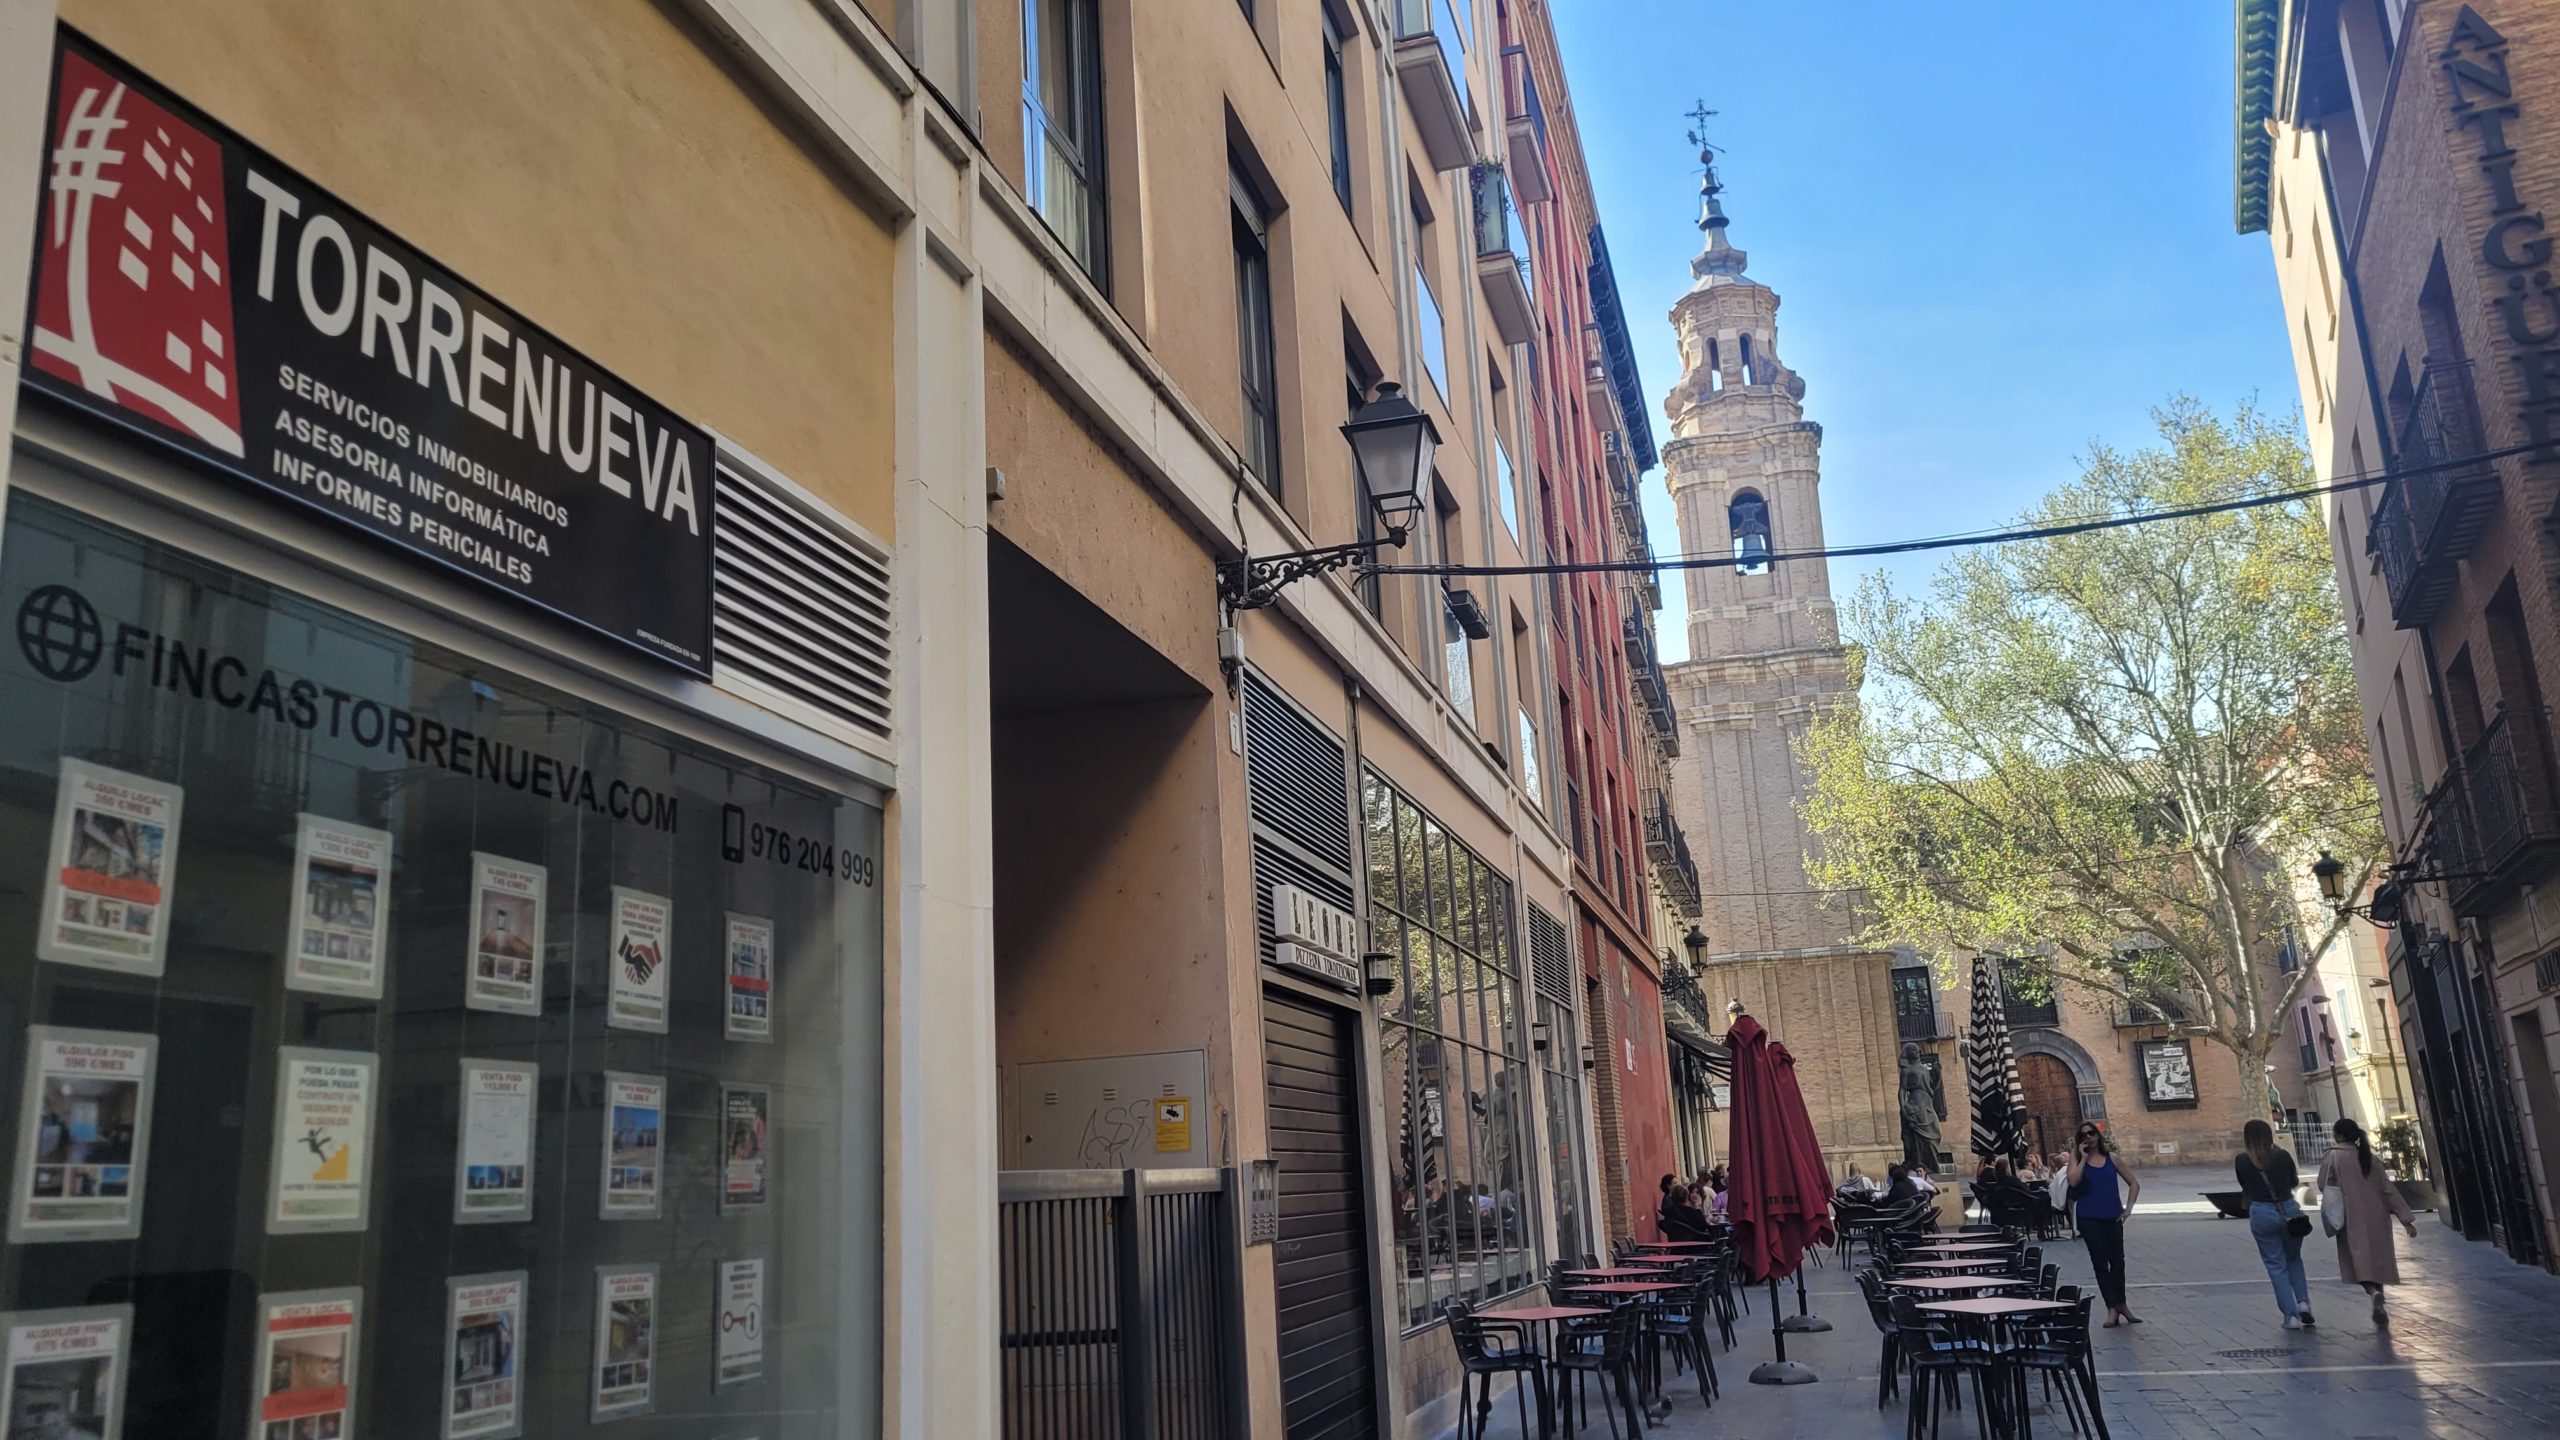 Fincas Torrenueva, tu inmobiliaria en Zaragoza